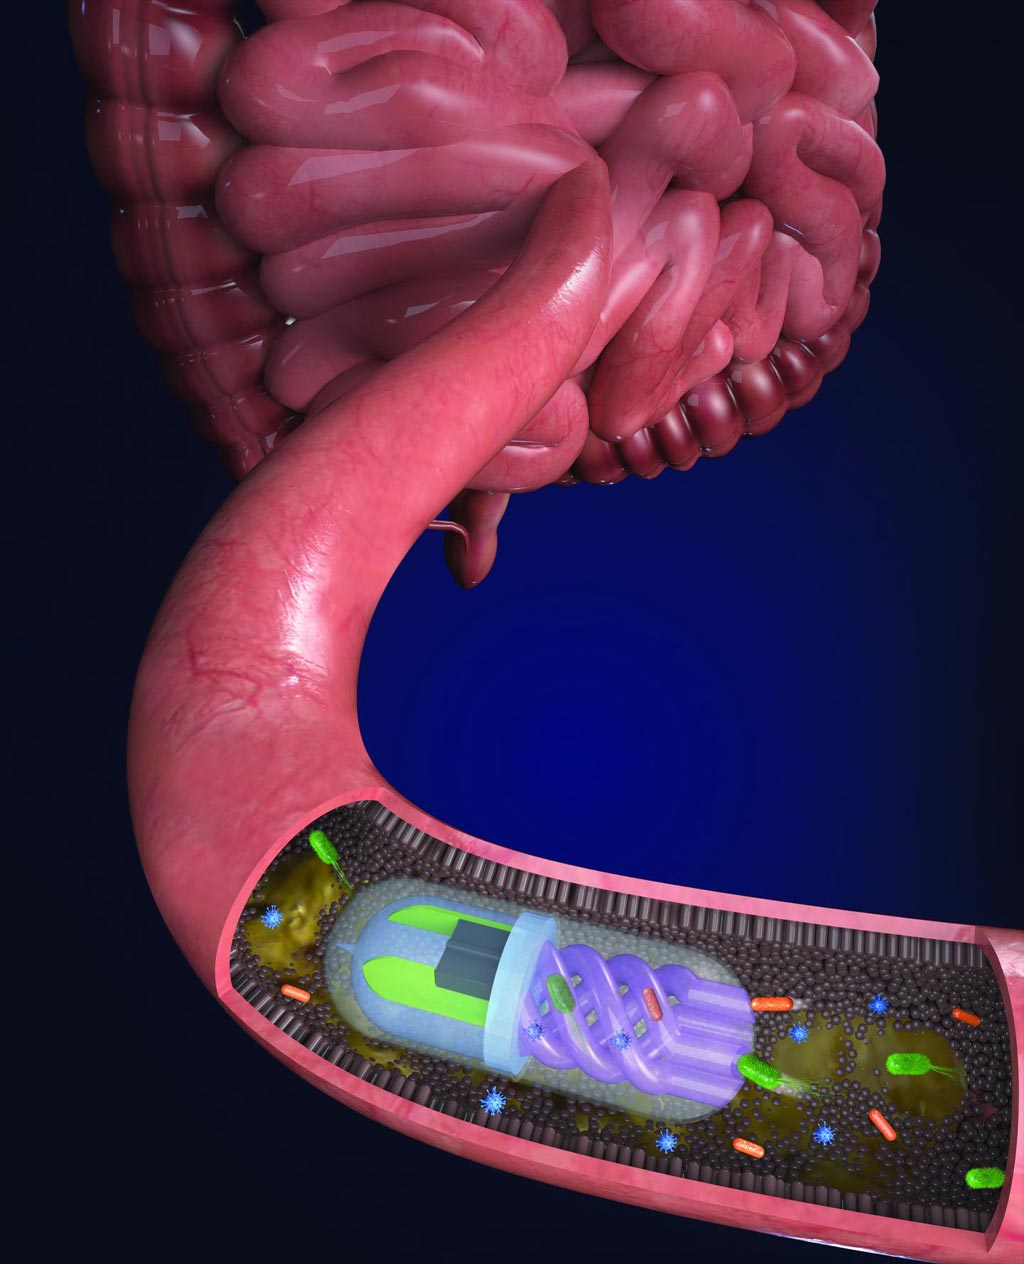 Imagen: Las bacterias intestinales son atraídas hacia los canales helicoidales por una “bomba” osmótica generada por una cámara llena de sal de calcio dentro de la píldora (Fotografía cortesía de Nano Lab, Universidad de Tufts).